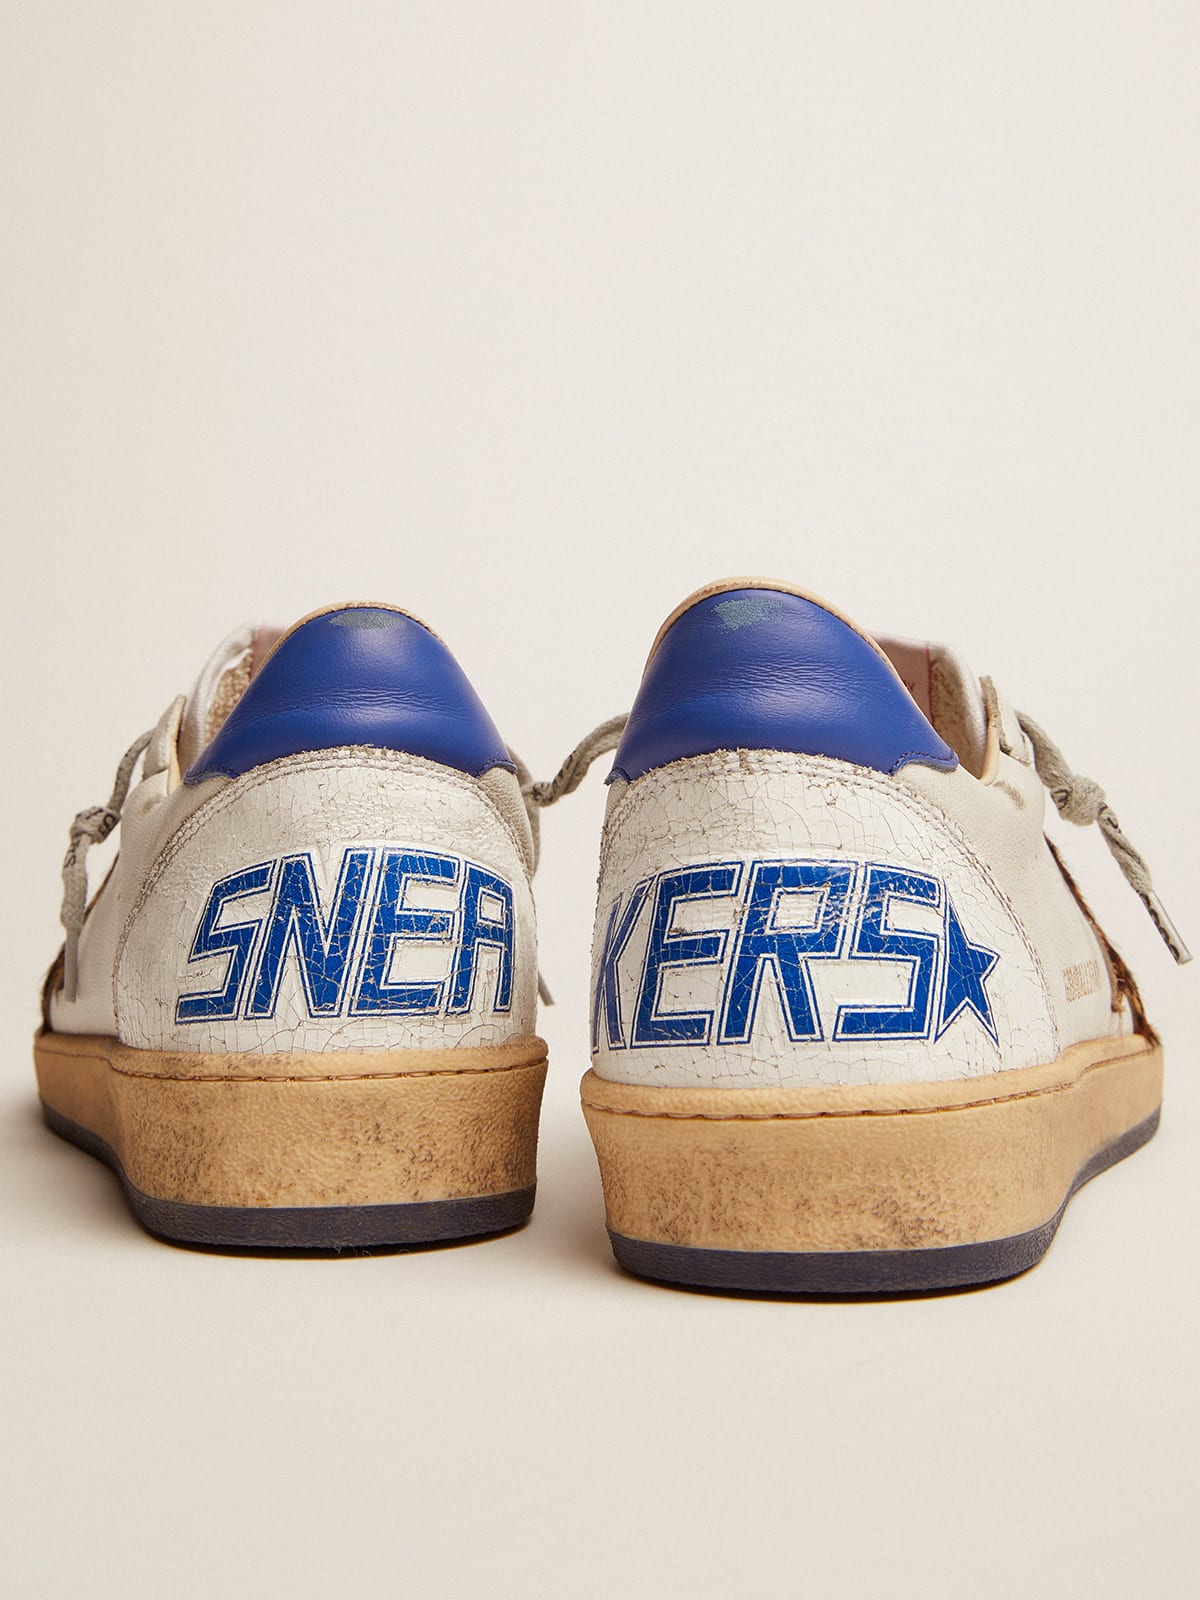 Golden Goose - Sneakers Ball Star en cuir blanc avec détails bleuet in 